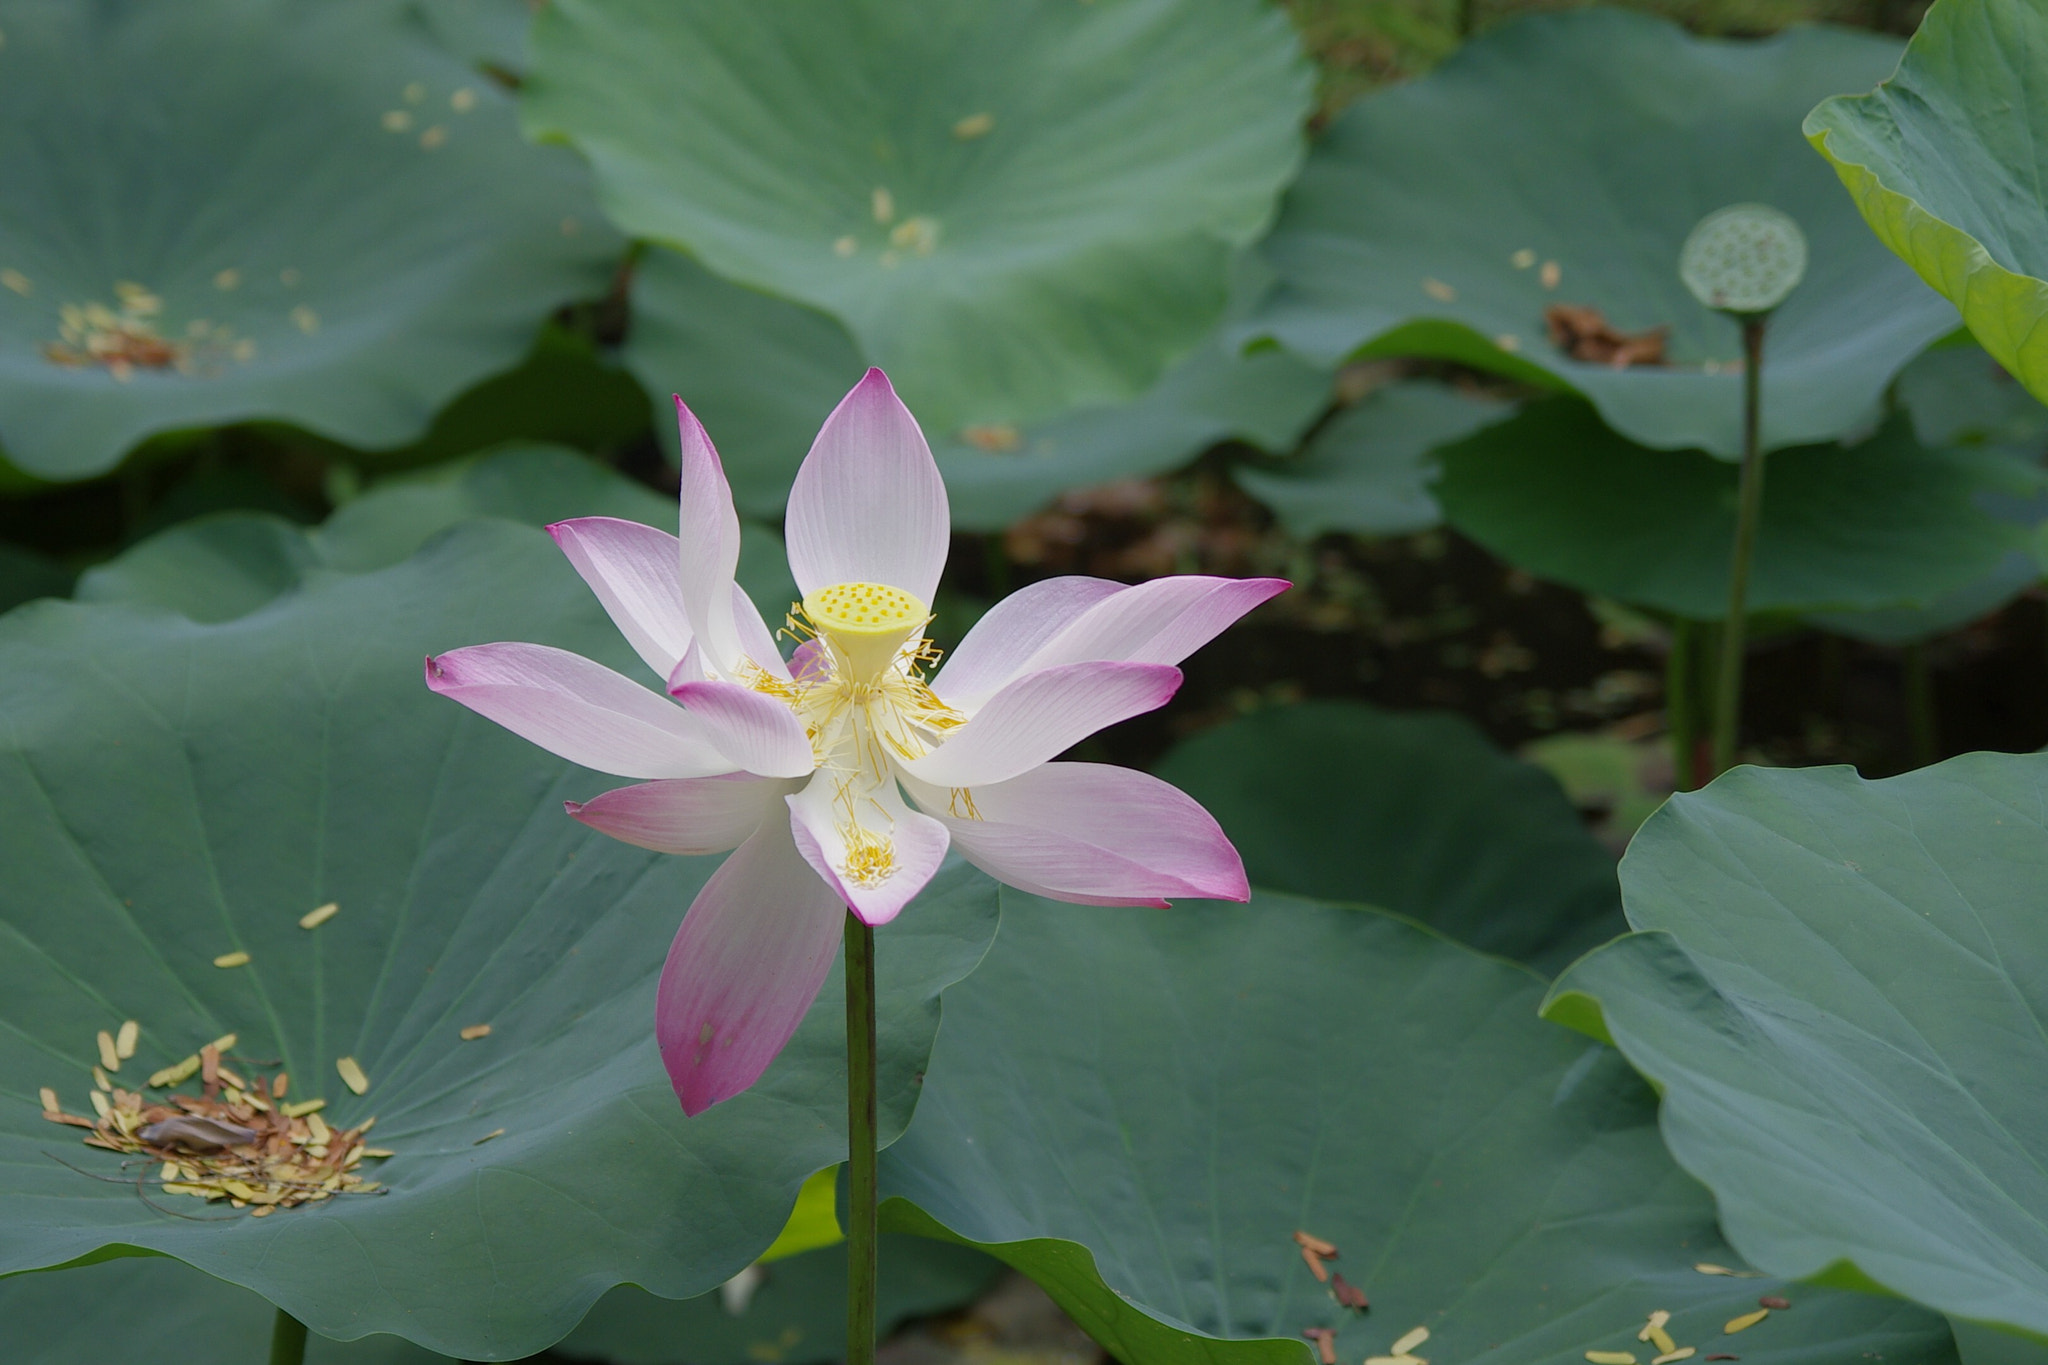 Pentax K-5 sample photo. Lotus photography